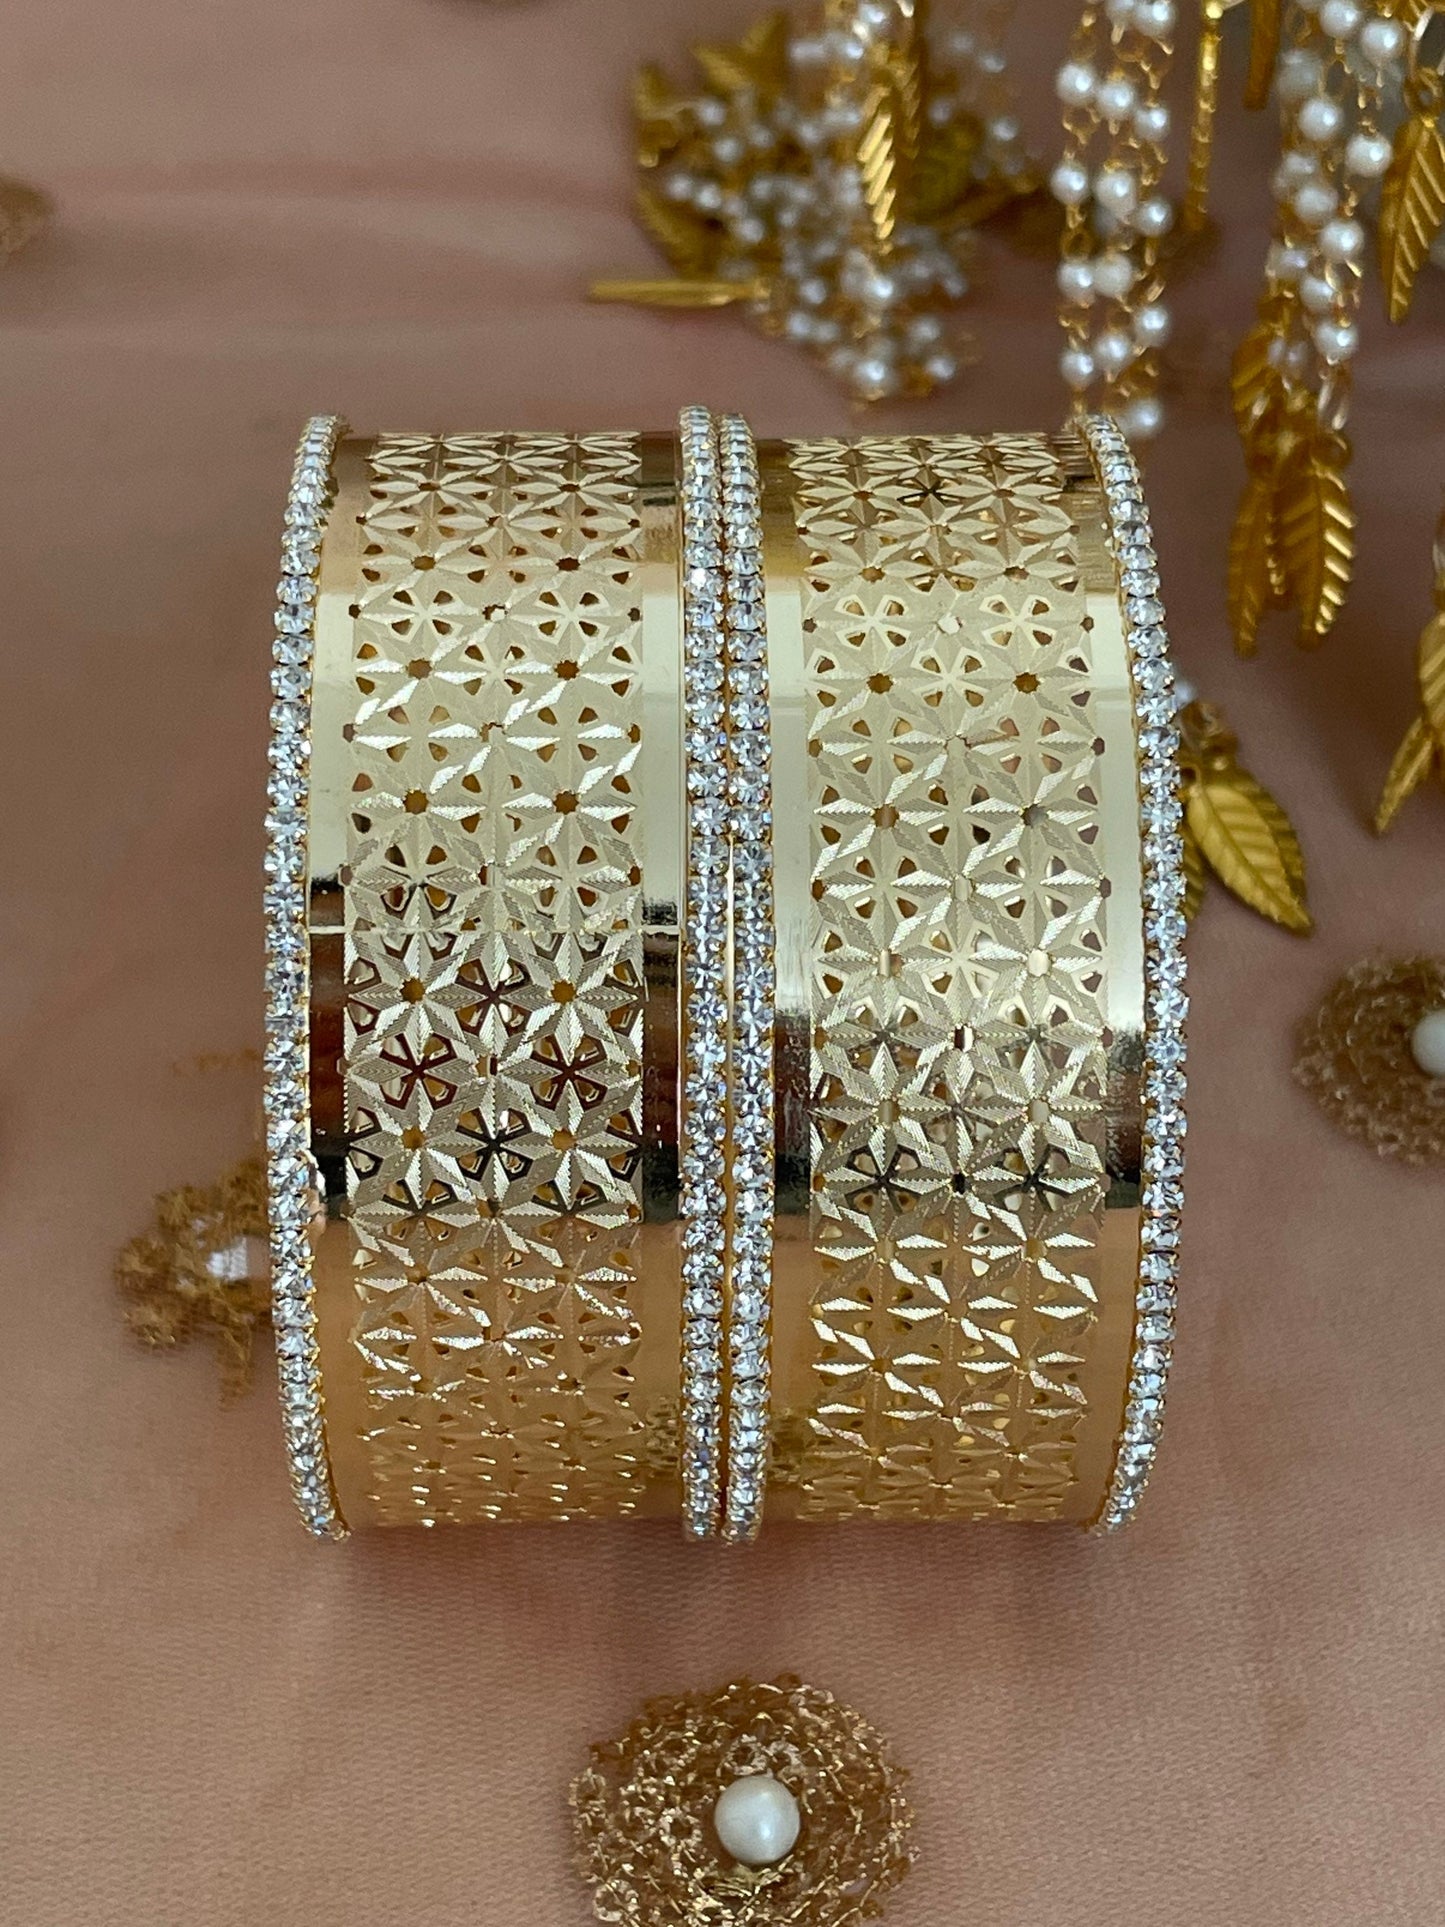 Pair of Gold Diamanté Cutwork Design Statement Kangan Karas Kada Indian Bangles Bangles